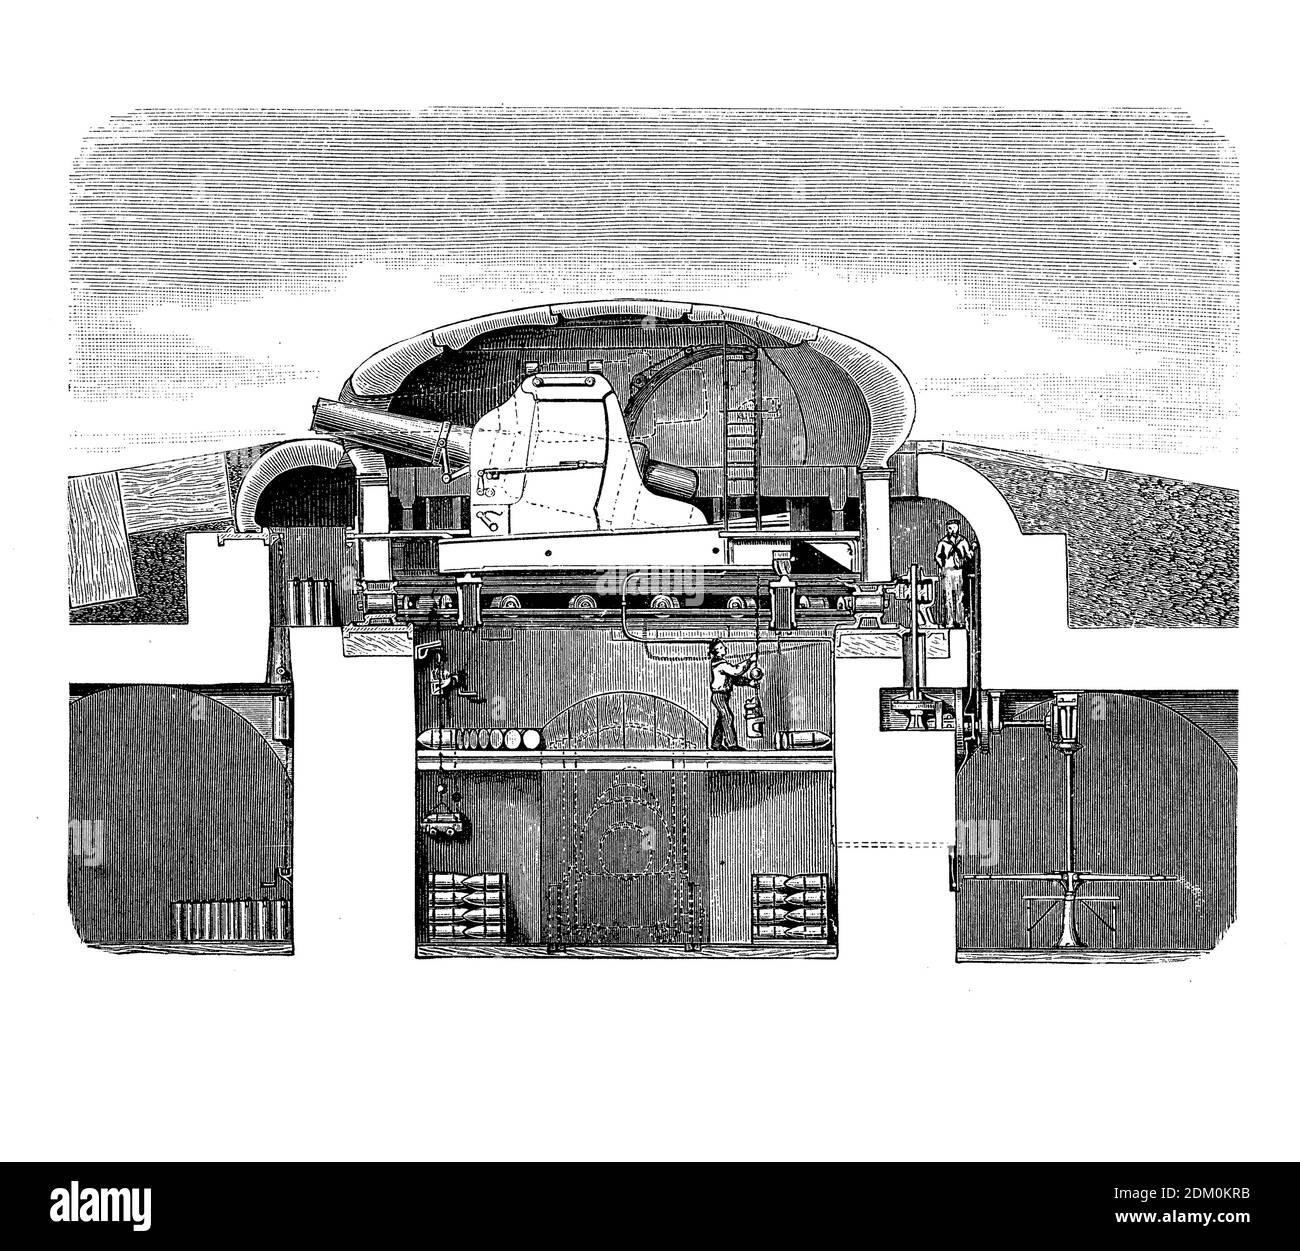 Tourelle blindée pour fortifications militaires défensives, développée par les industries Hermann Gruson à Magdebourg- Allemagne, gravure du XIXe siècle Banque D'Images